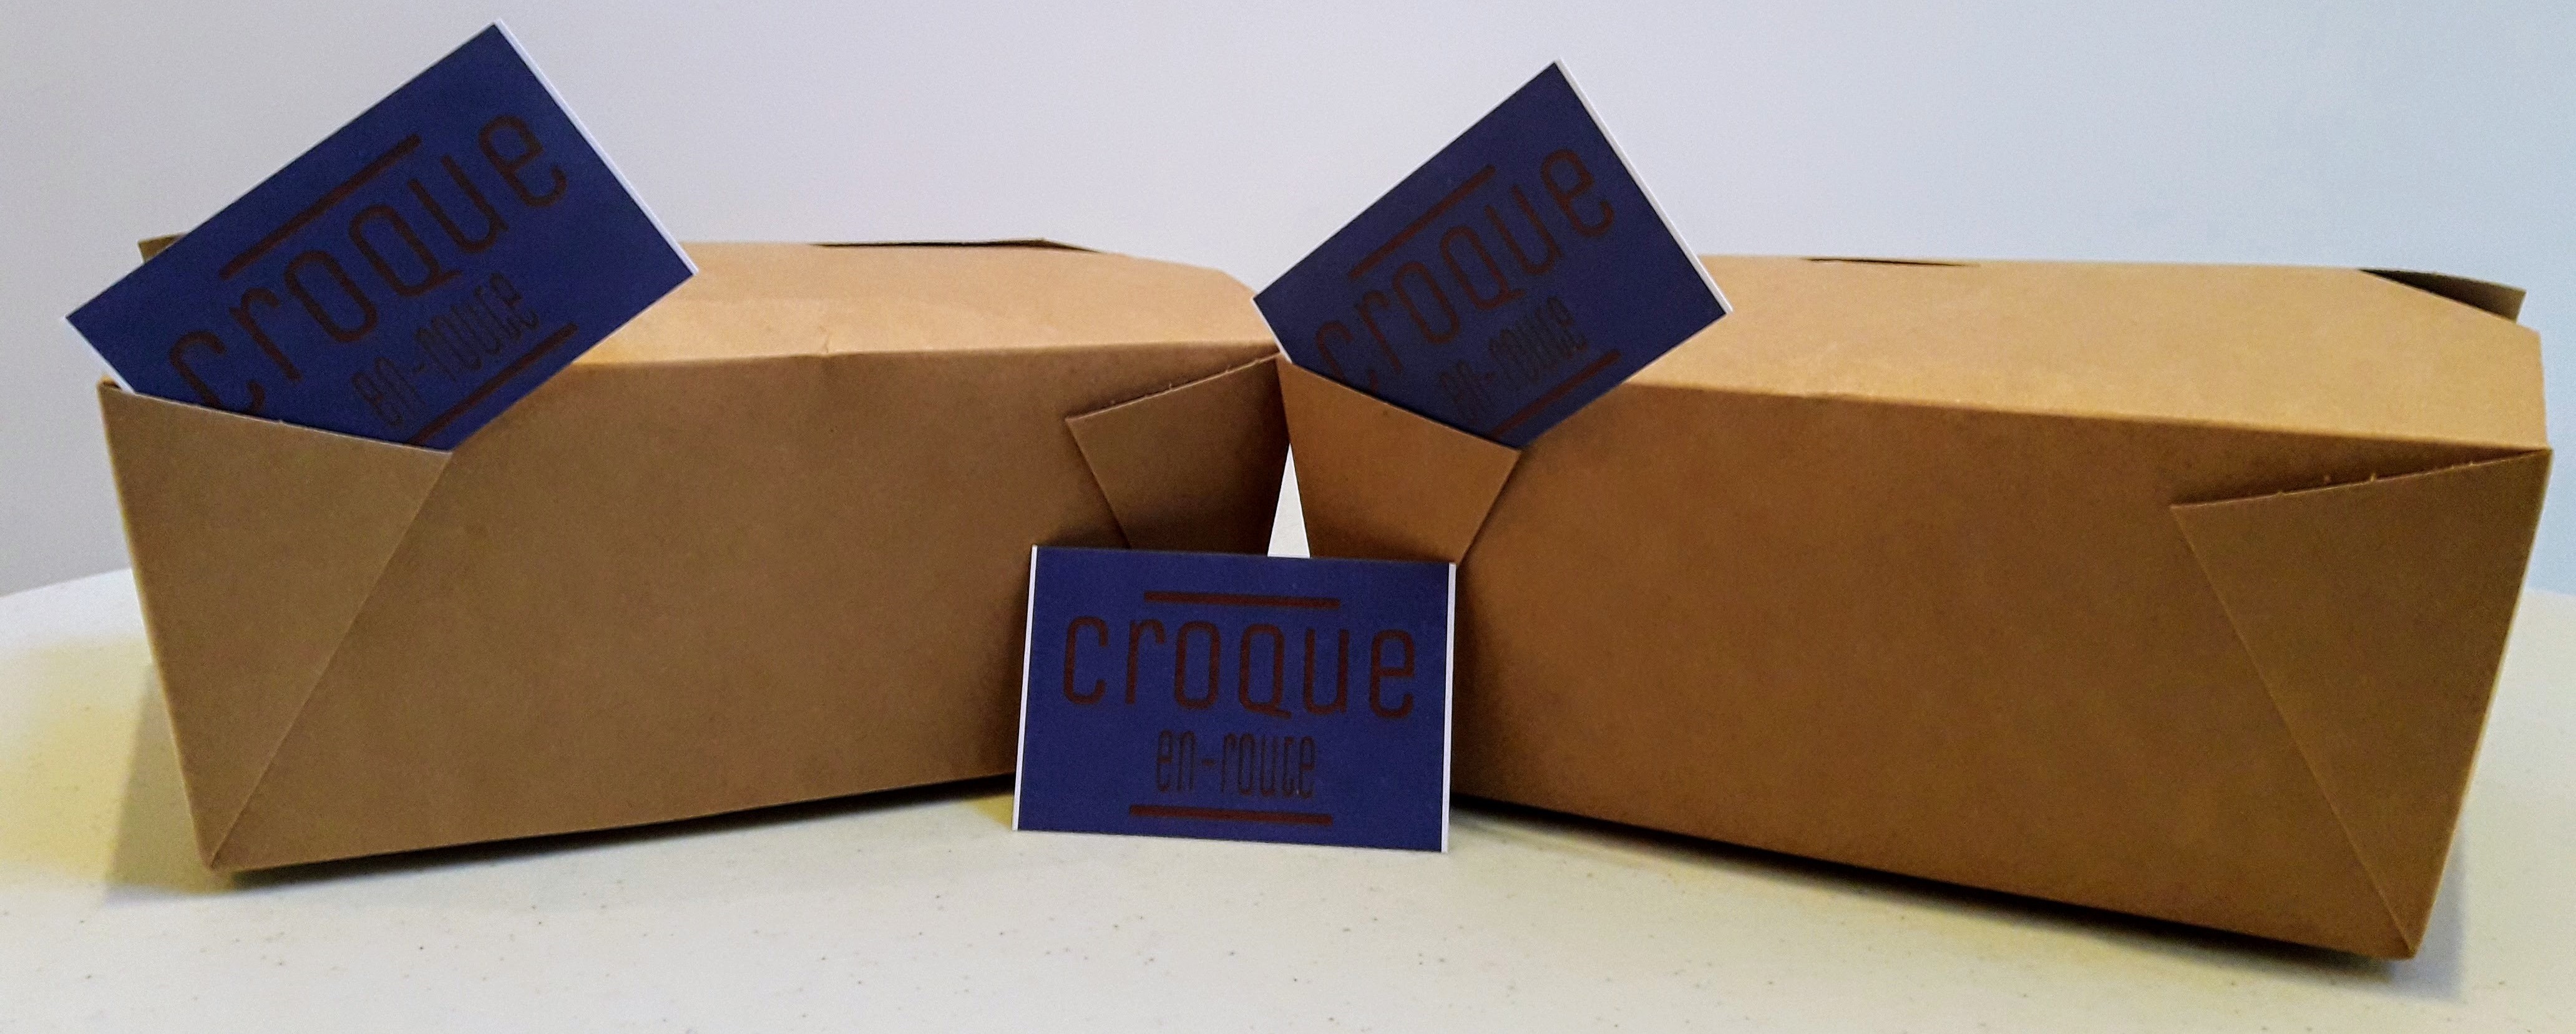 croquebox